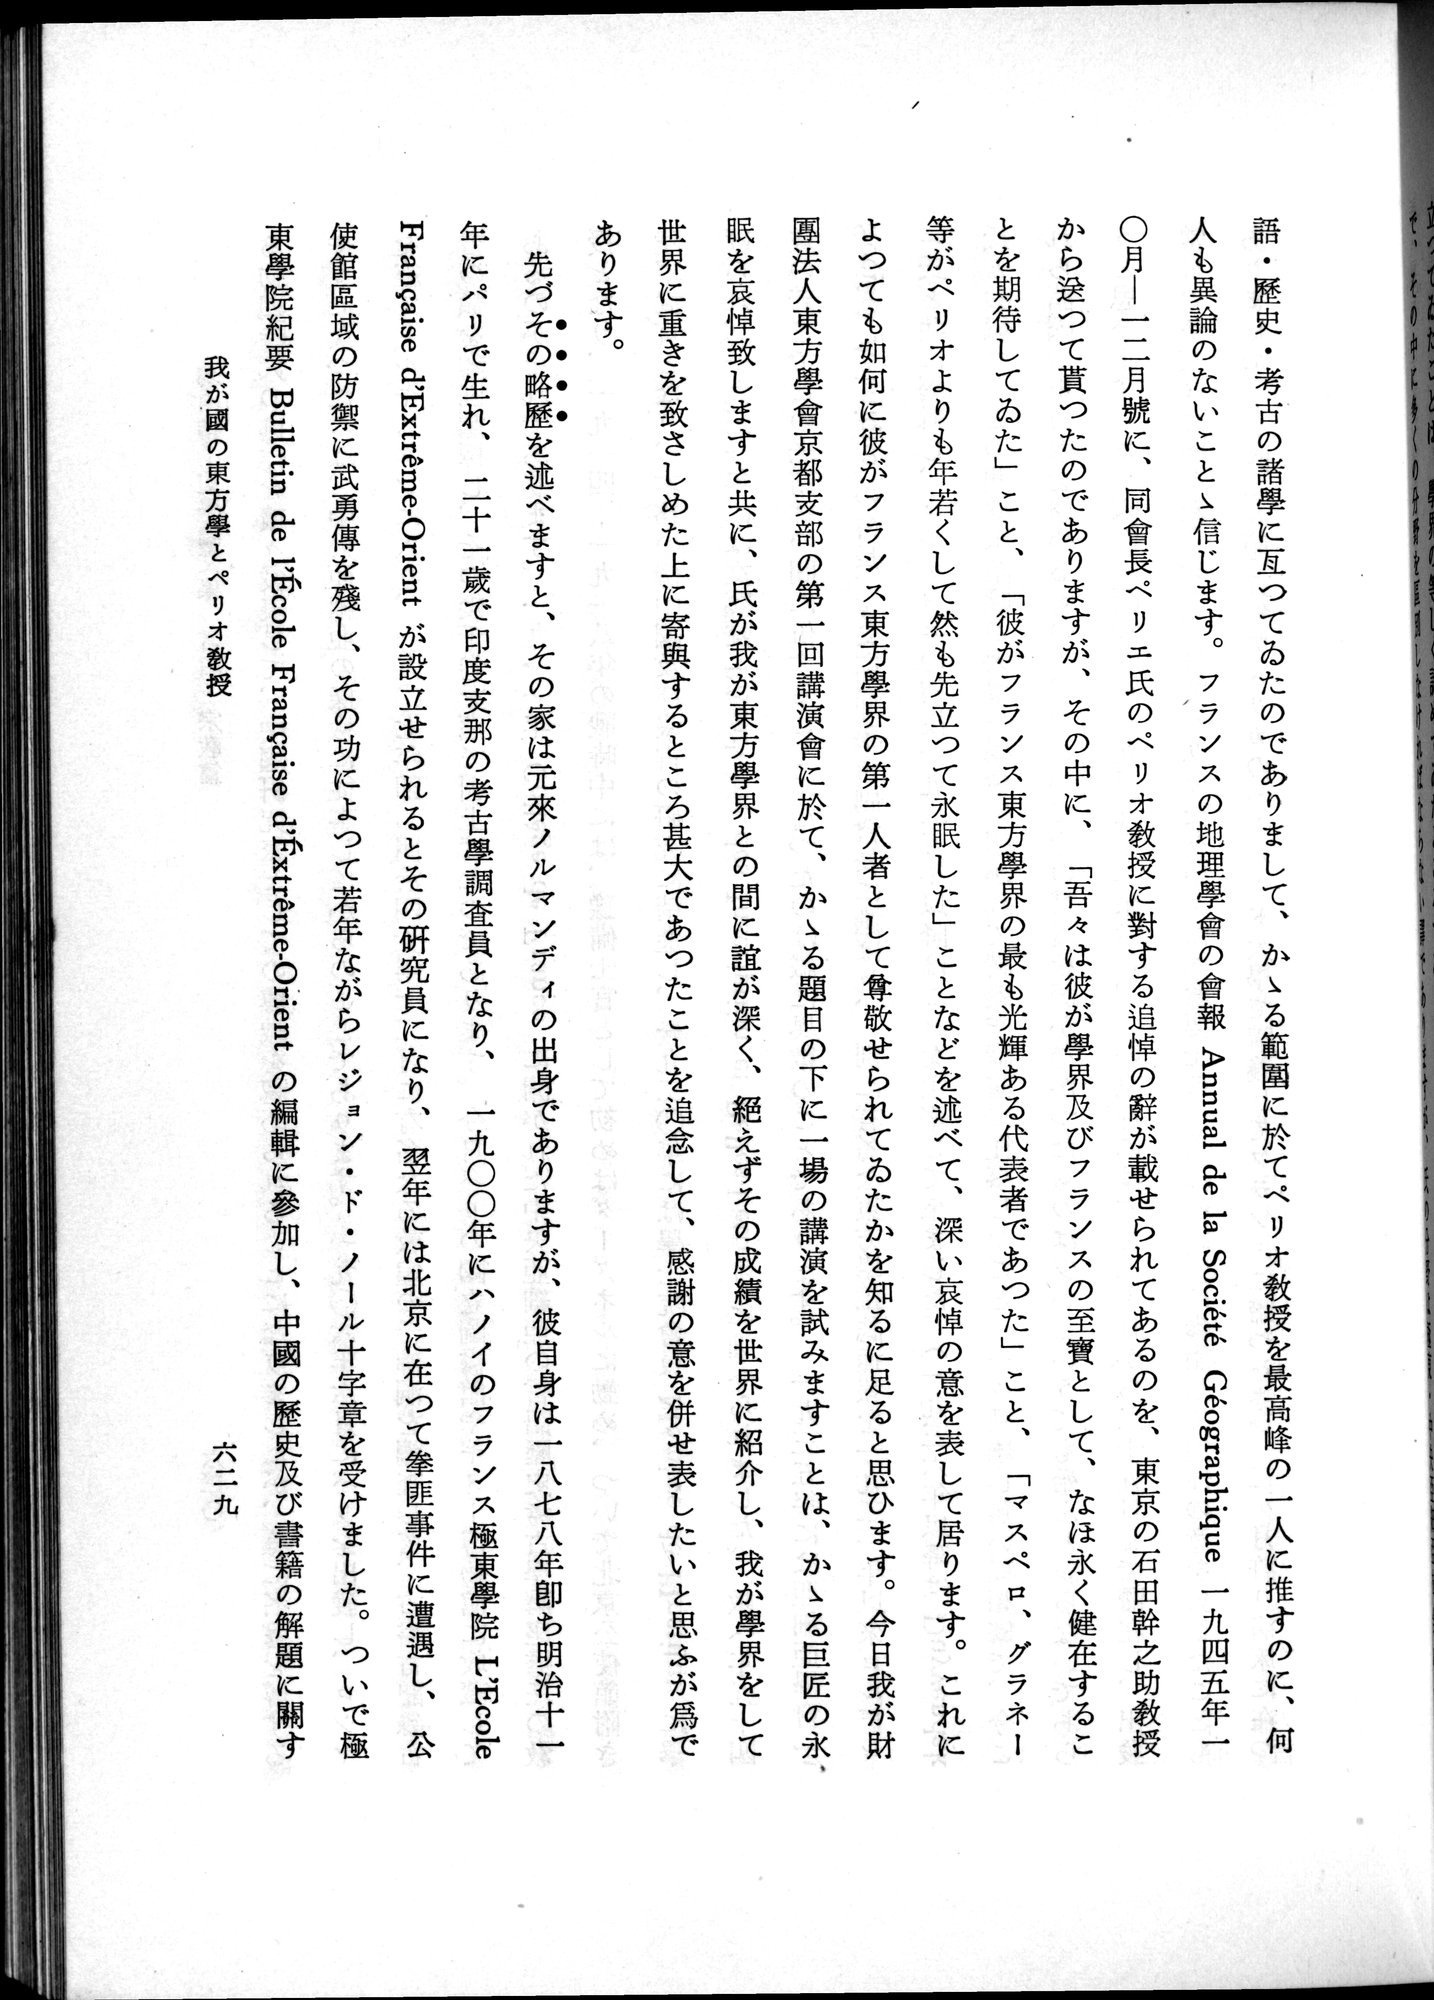 羽田博士史学論文集 : vol.2 / Page 693 (Grayscale High Resolution Image)